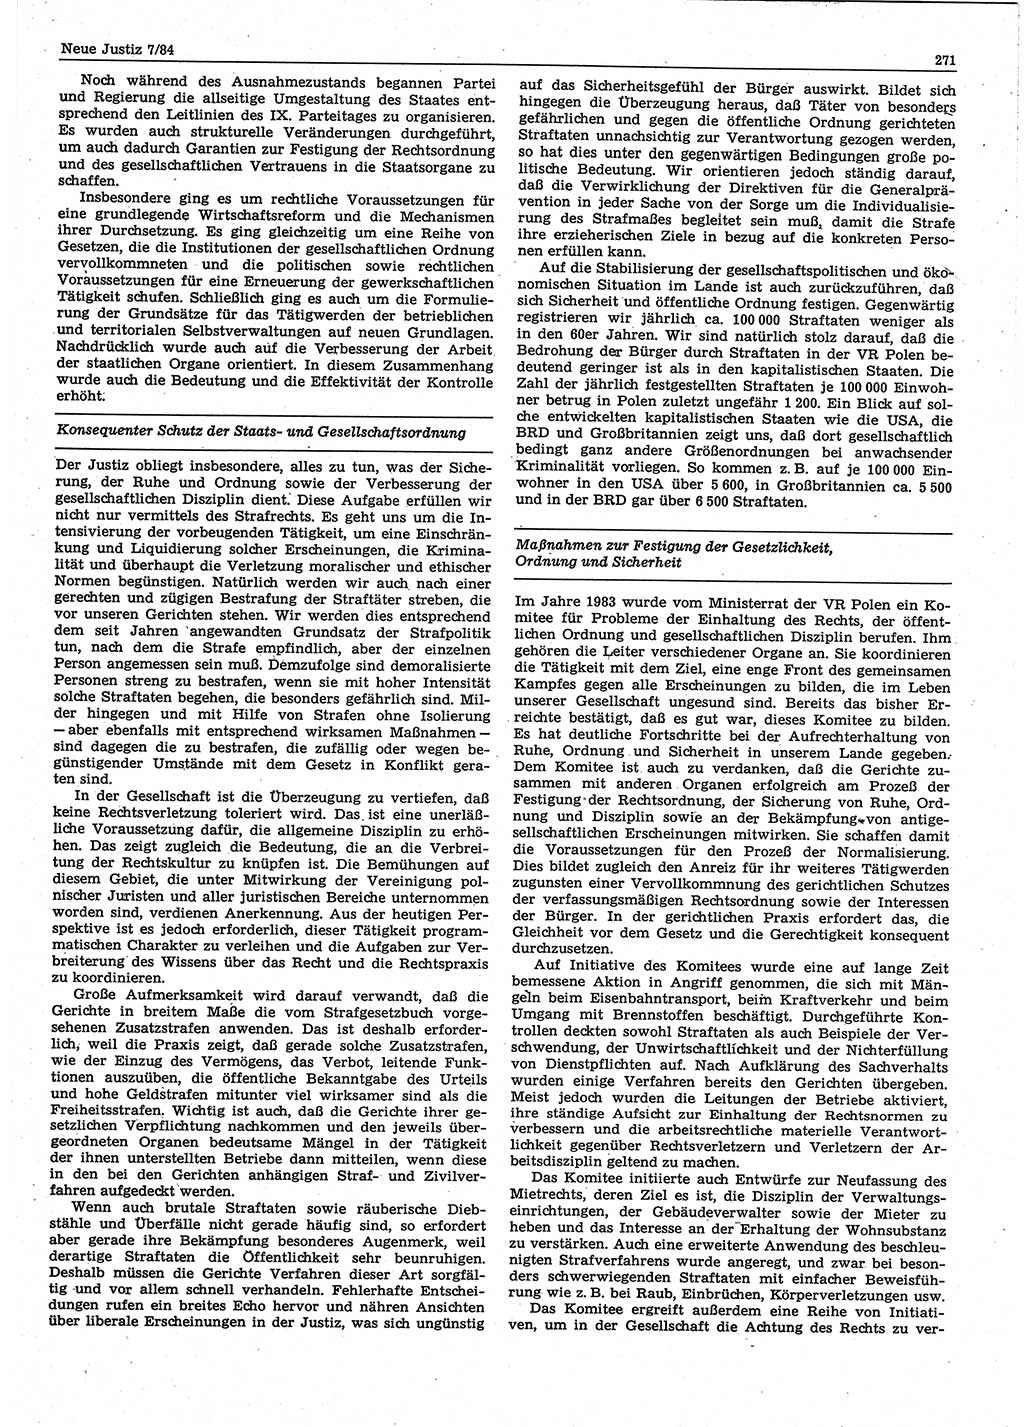 Neue Justiz (NJ), Zeitschrift für sozialistisches Recht und Gesetzlichkeit [Deutsche Demokratische Republik (DDR)], 38. Jahrgang 1984, Seite 271 (NJ DDR 1984, S. 271)